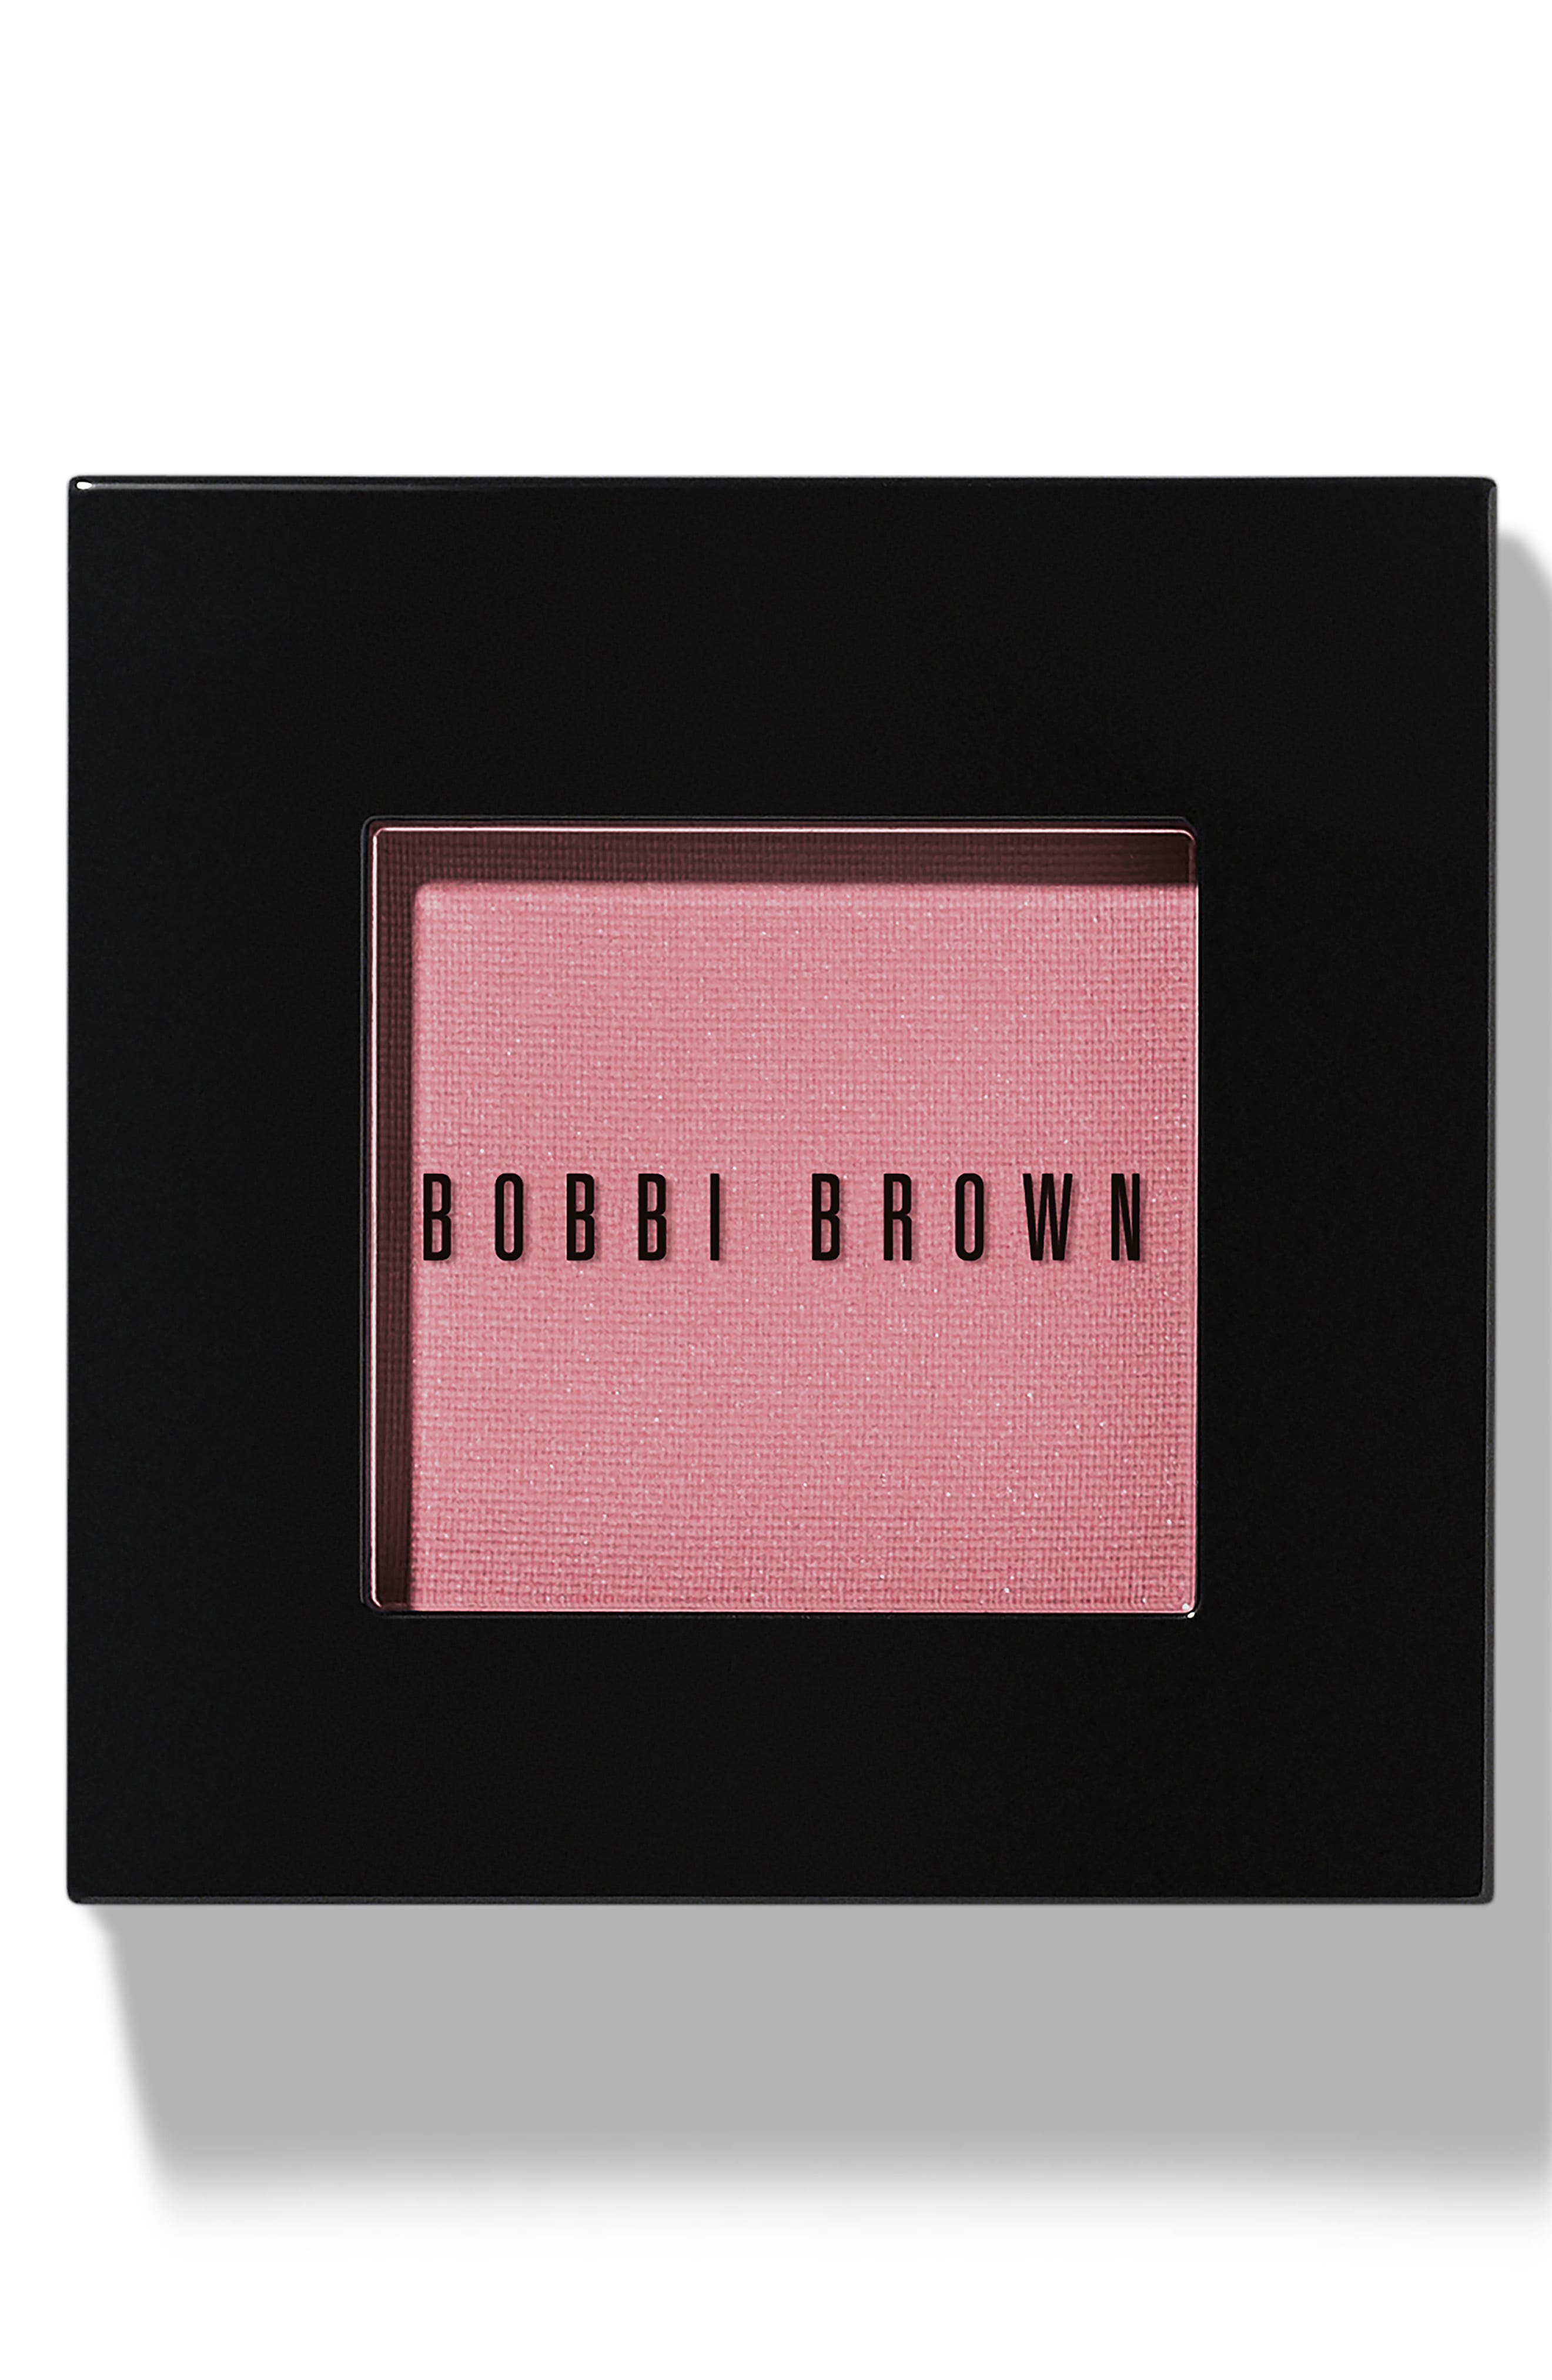 Bobbi Brown Matte Finish Long-wearing Blush In 01sand Pin